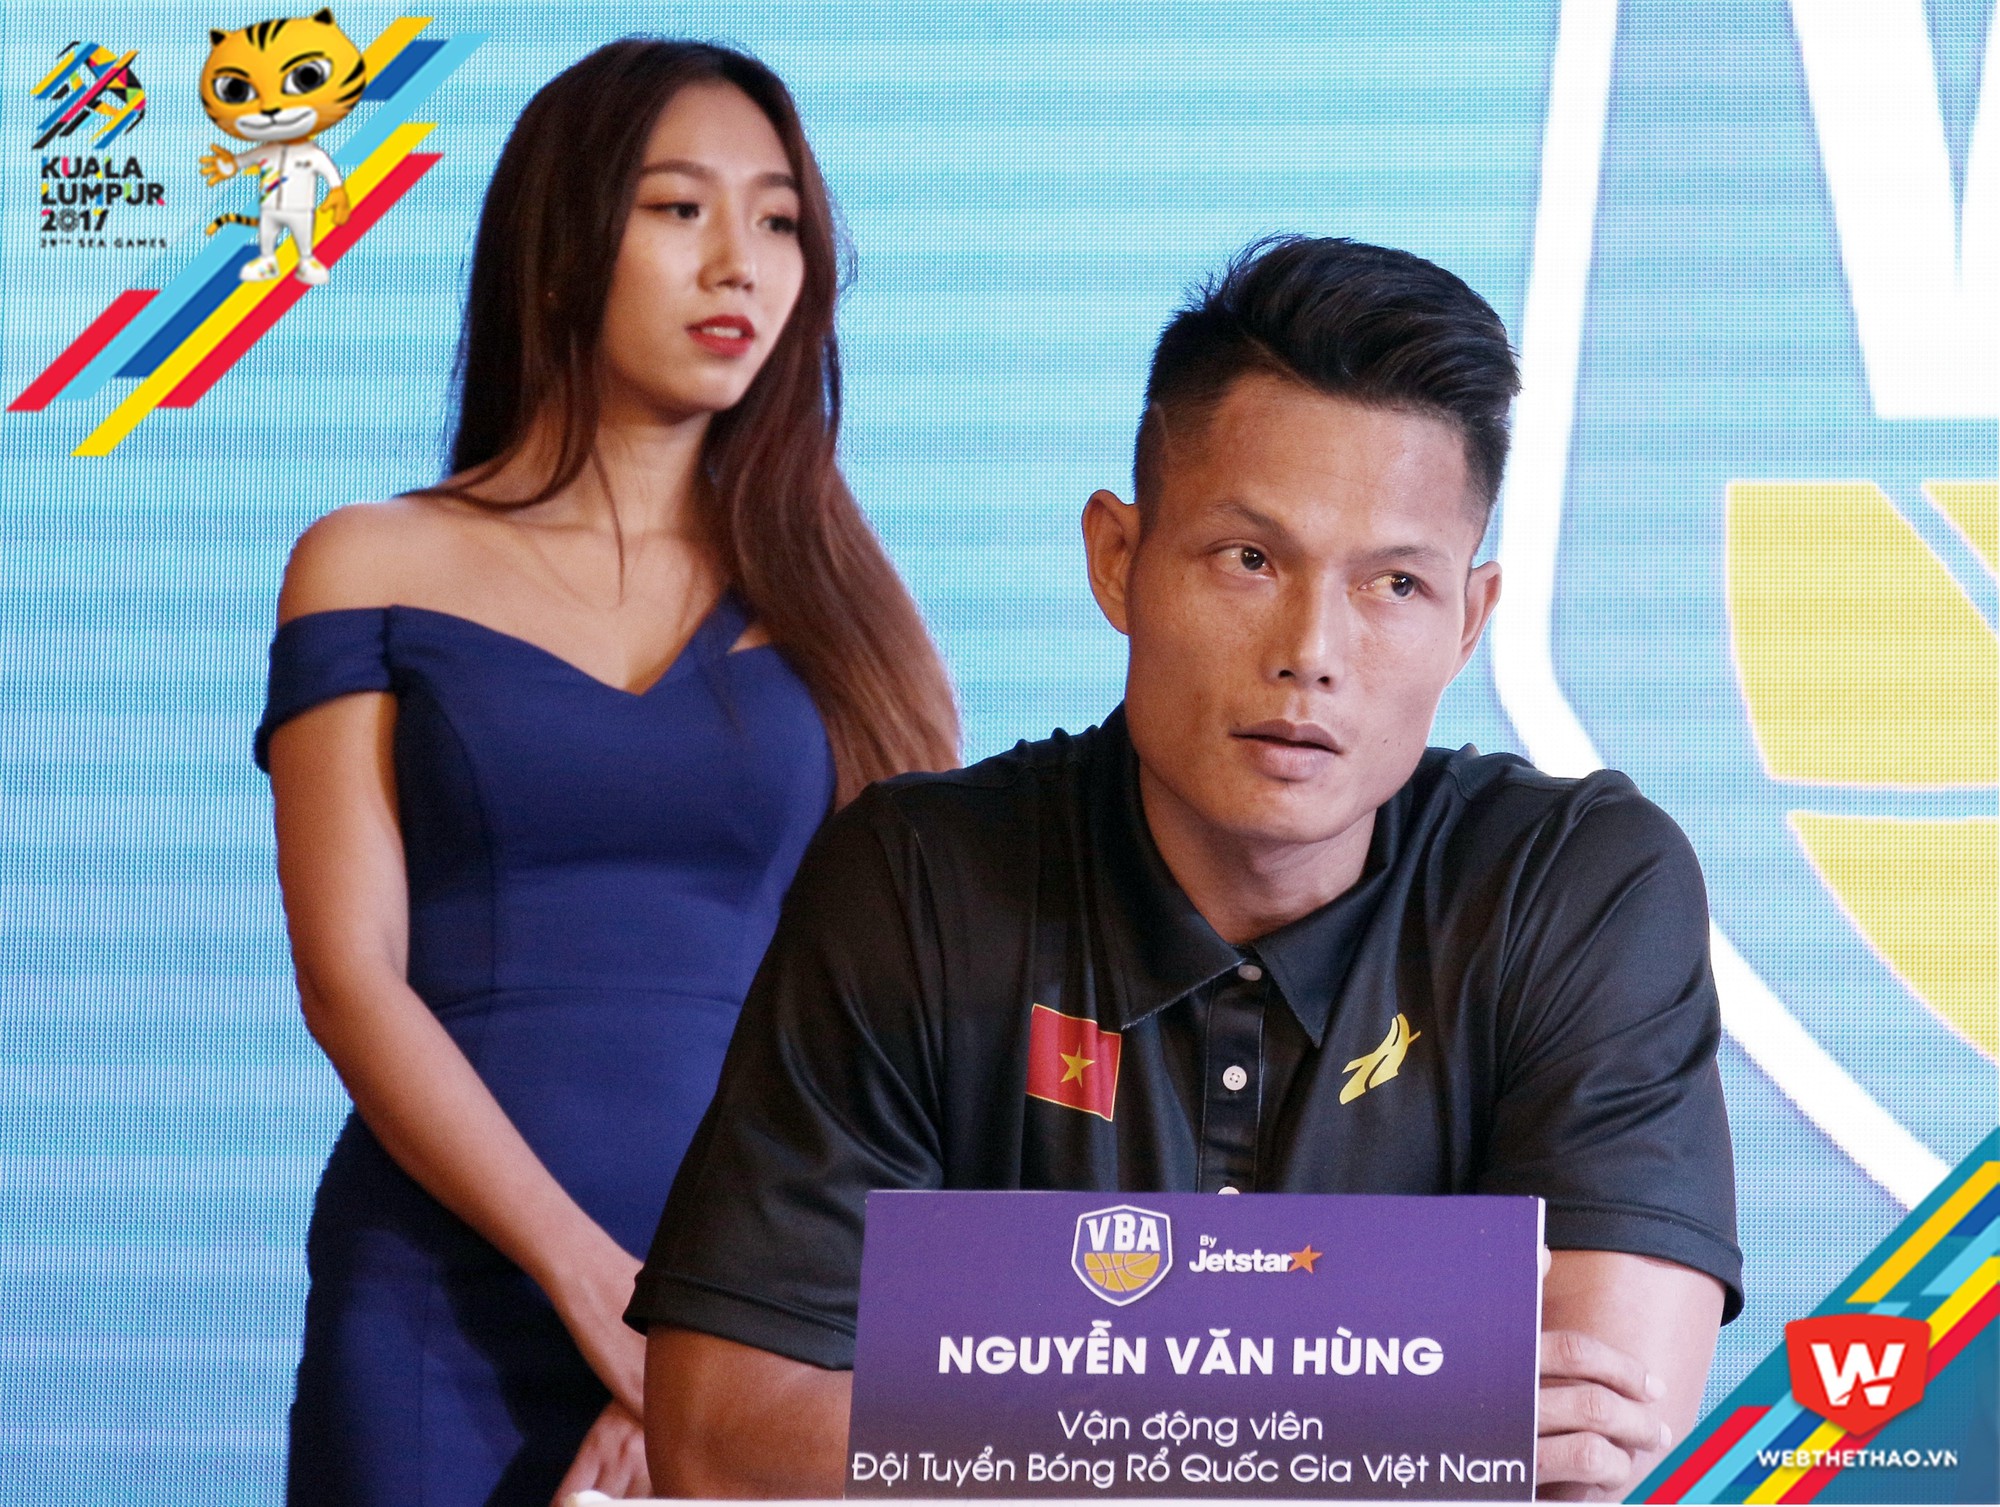 Nguyễn Văn Hùng đến với SEA Games 29 trong vai trò VĐVng rổ.